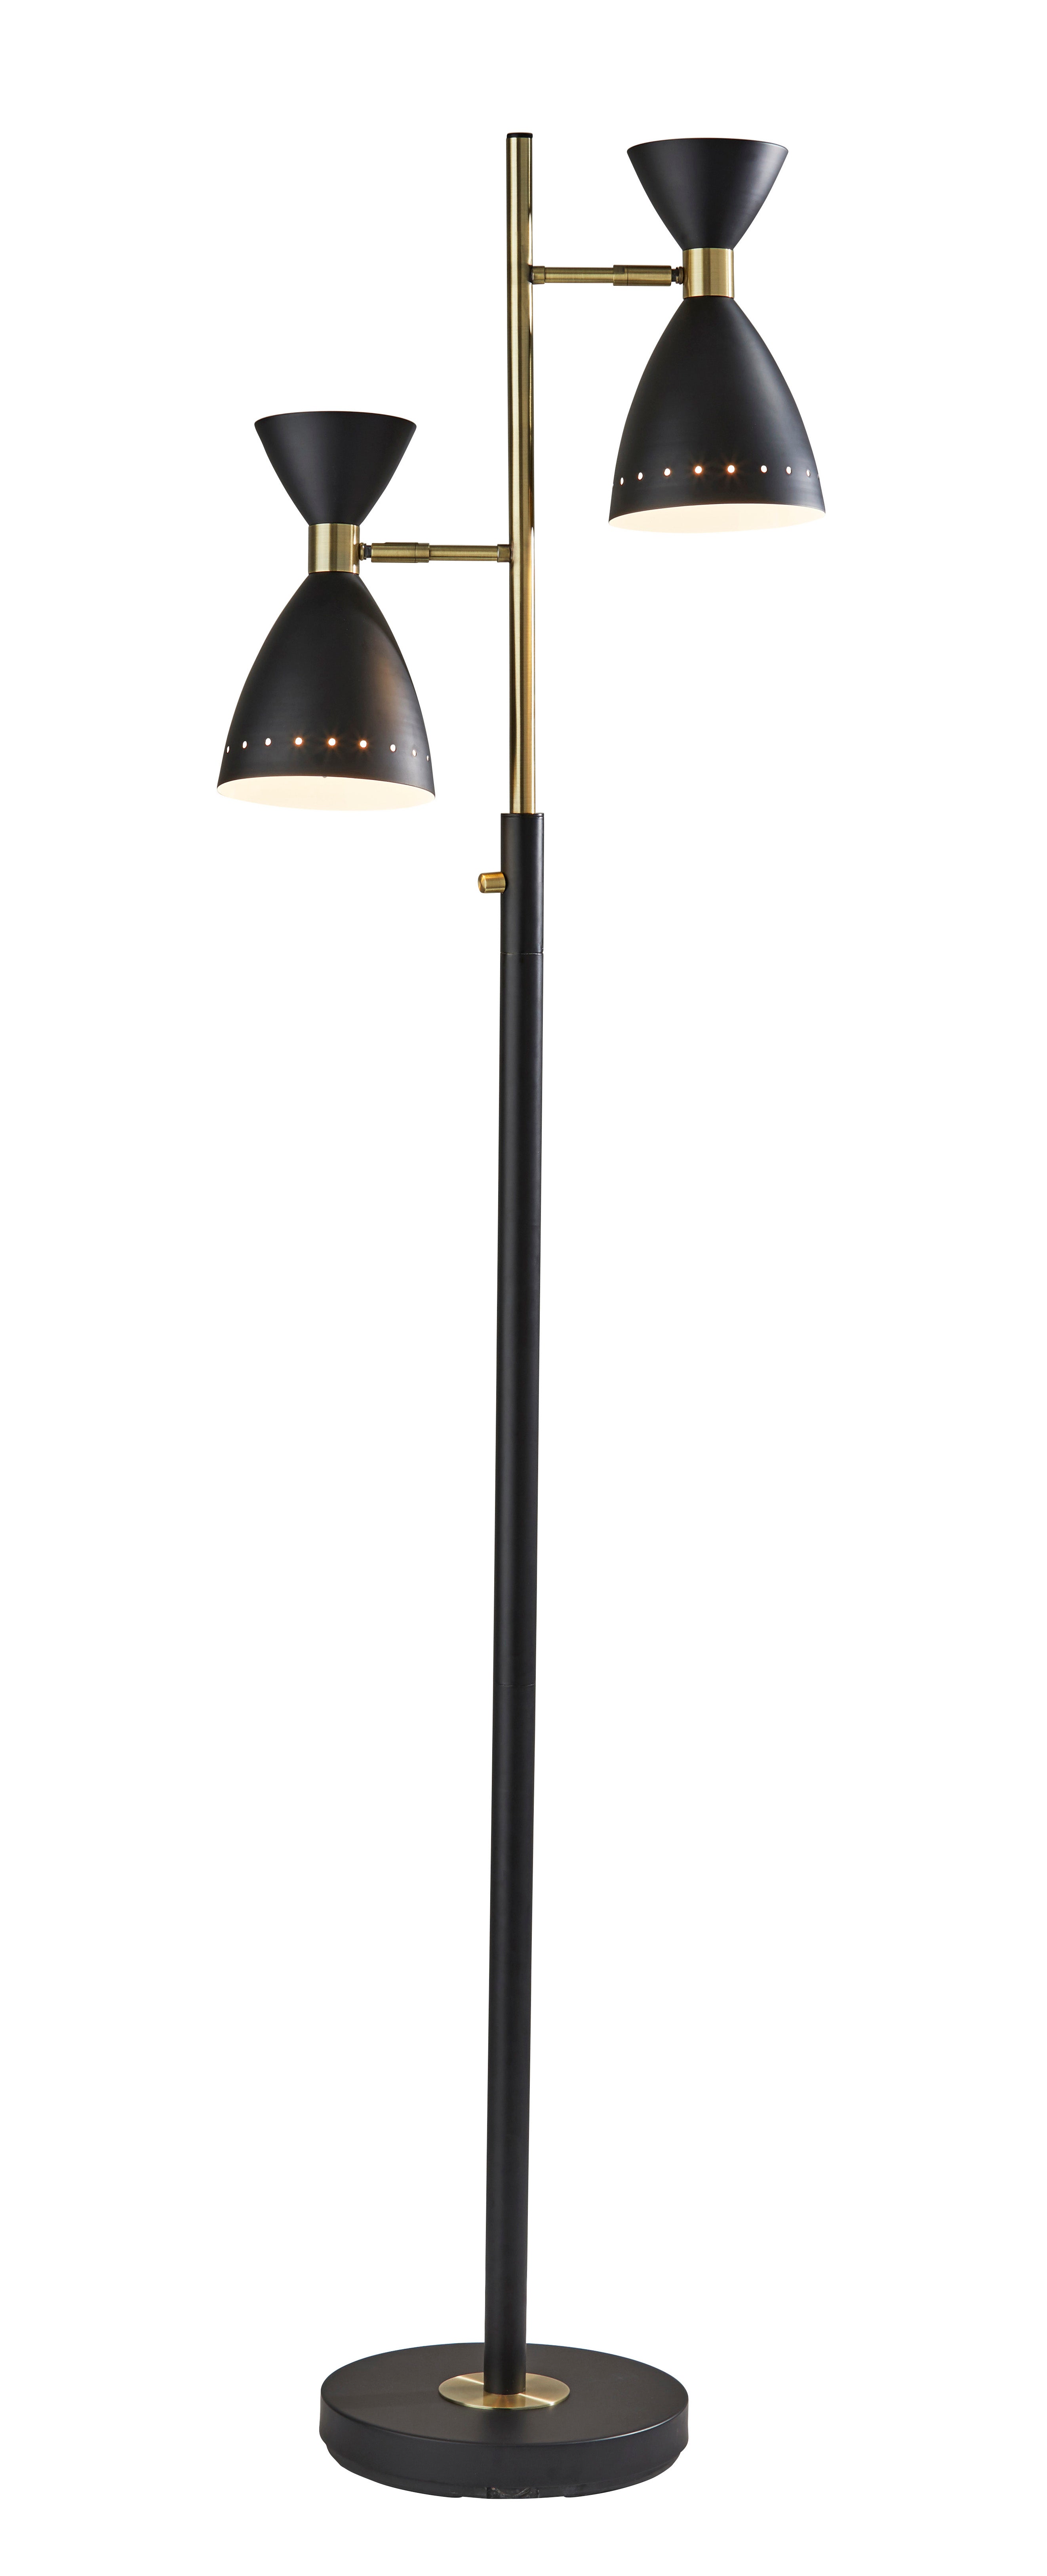 TRIO Lampe sur pied Noir, Or - 4285-01 | ADESSO